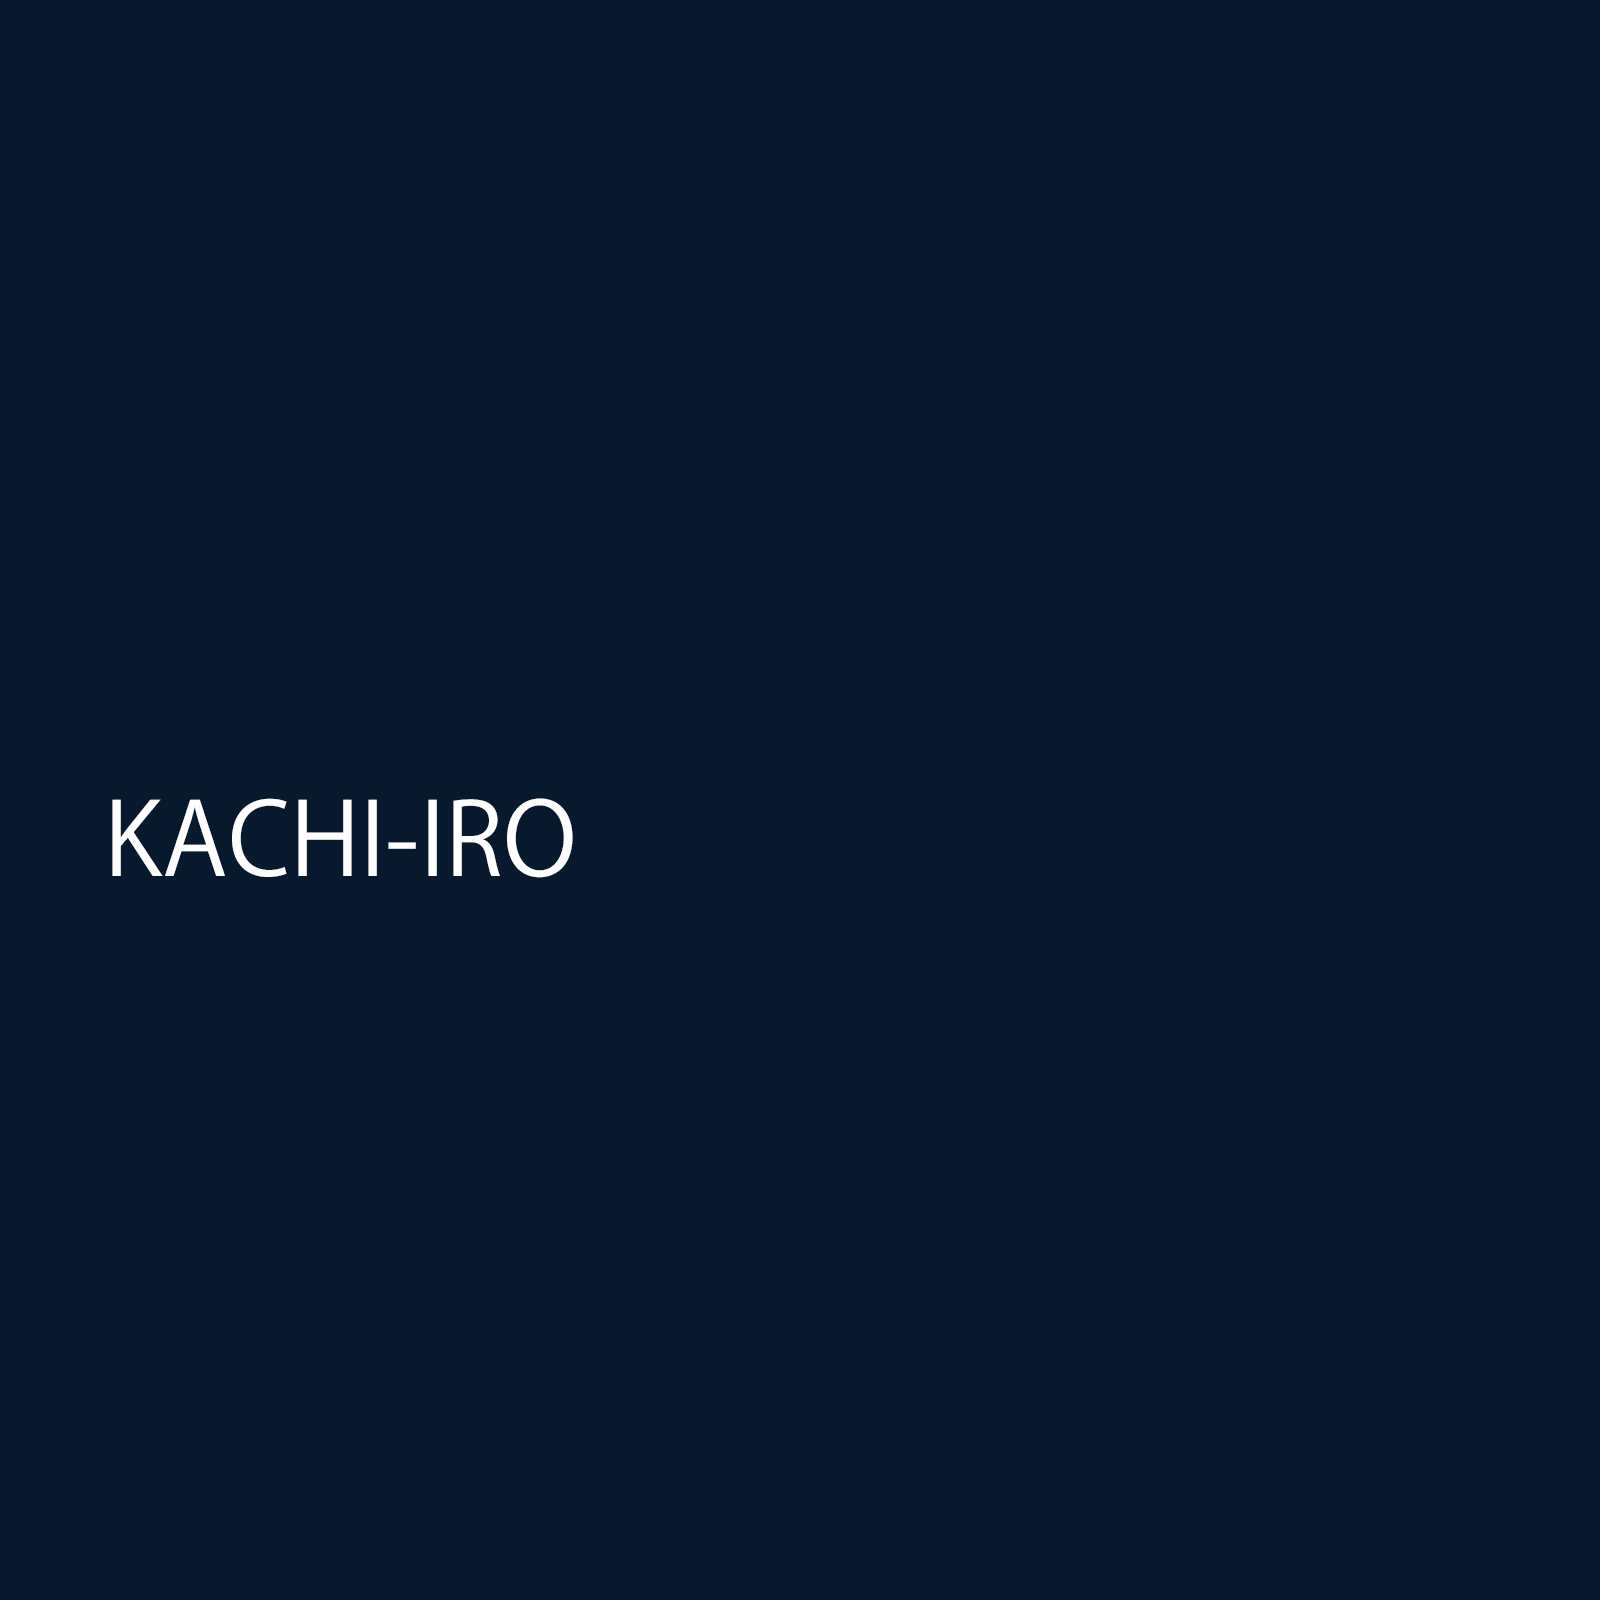 kachiiro.jpg